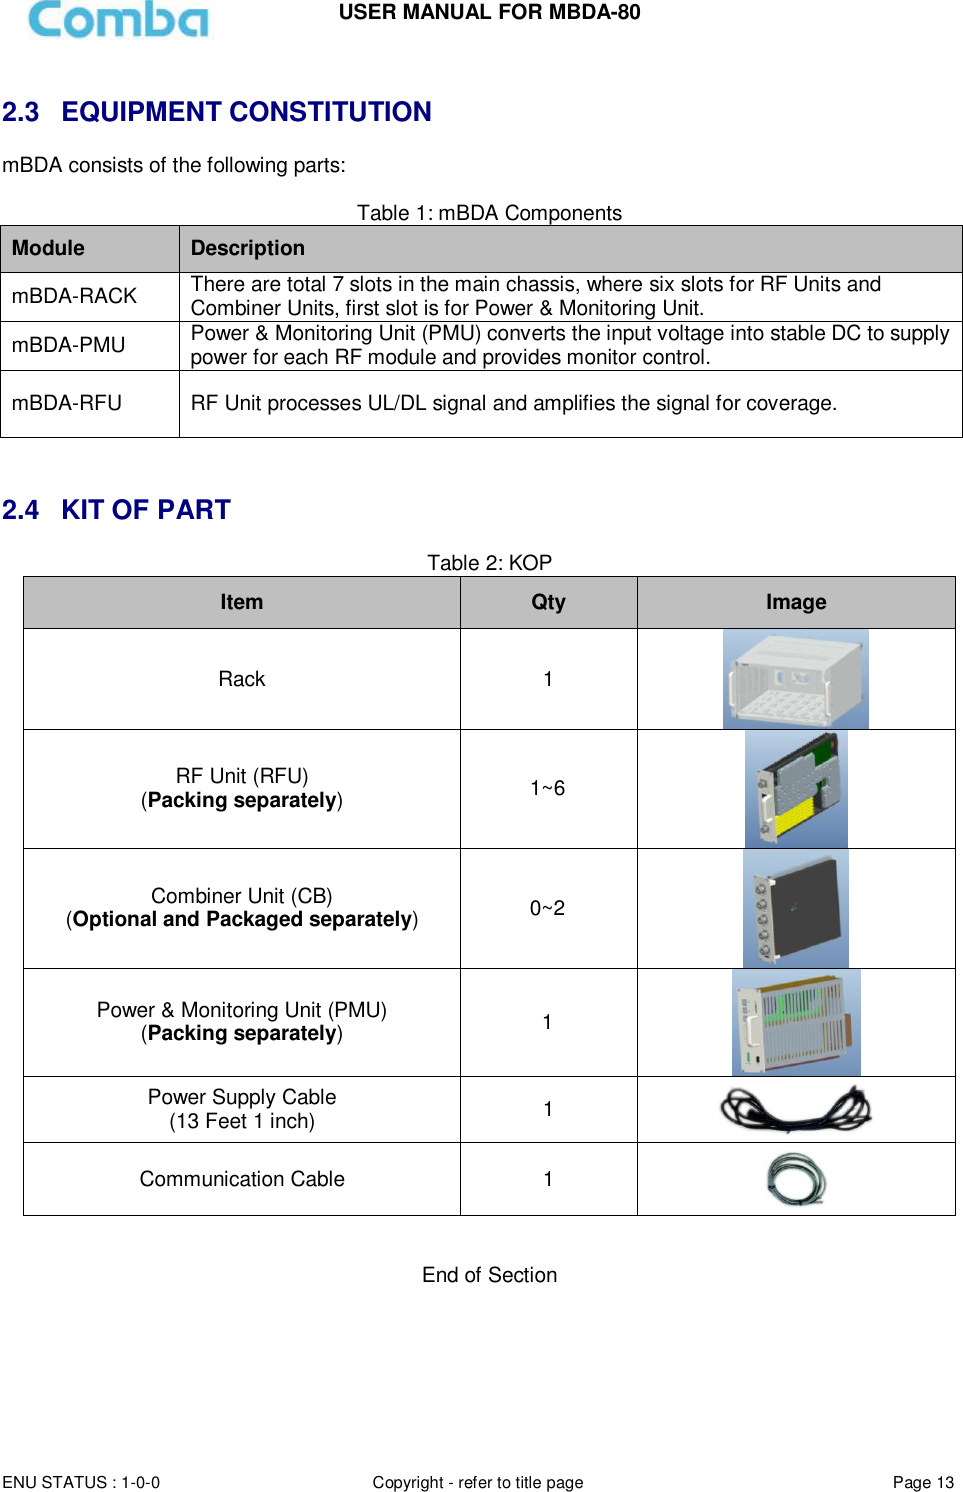 Page 13 of Comba Telecom MBDA-80 mBDA Band Seletive Repeater User Manual 